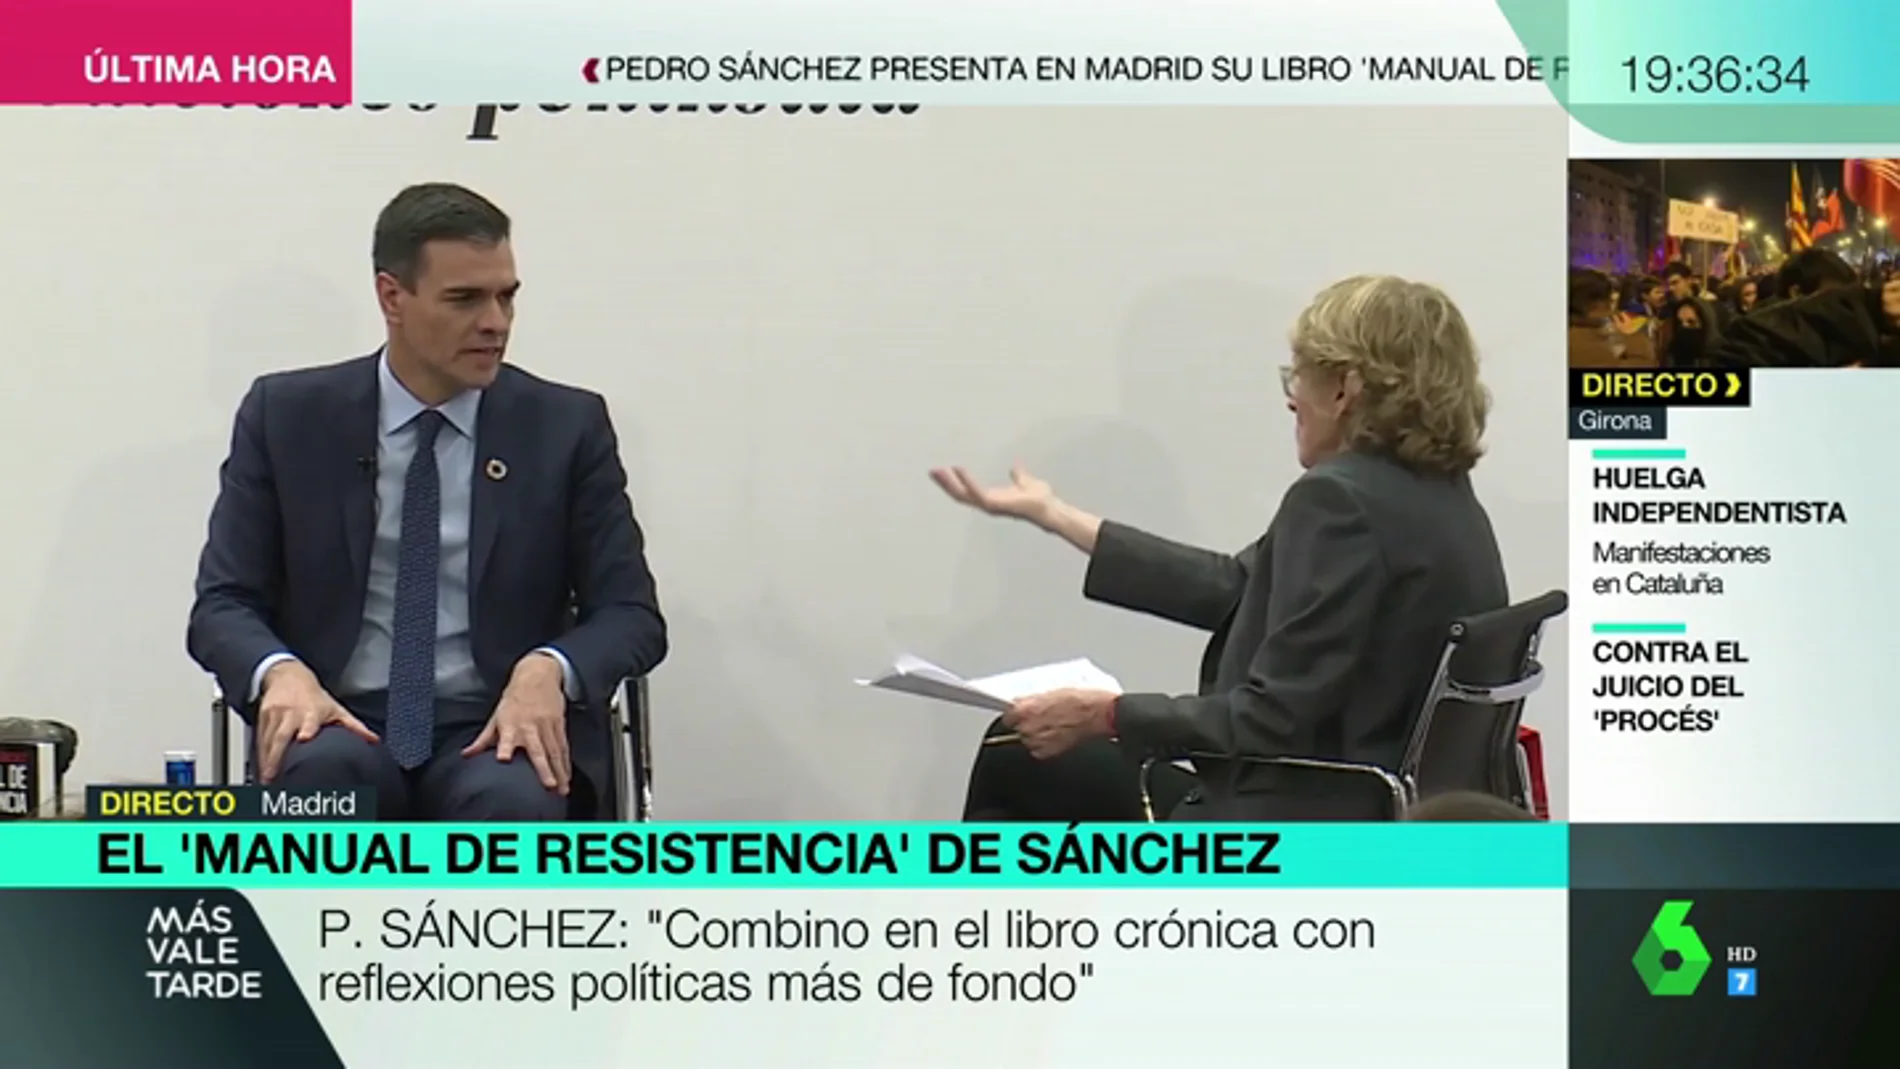 Mercedes Milá, a Pedro Sánchez: "El libro se compromete mucho más que ahora el presidente del Gobierno"